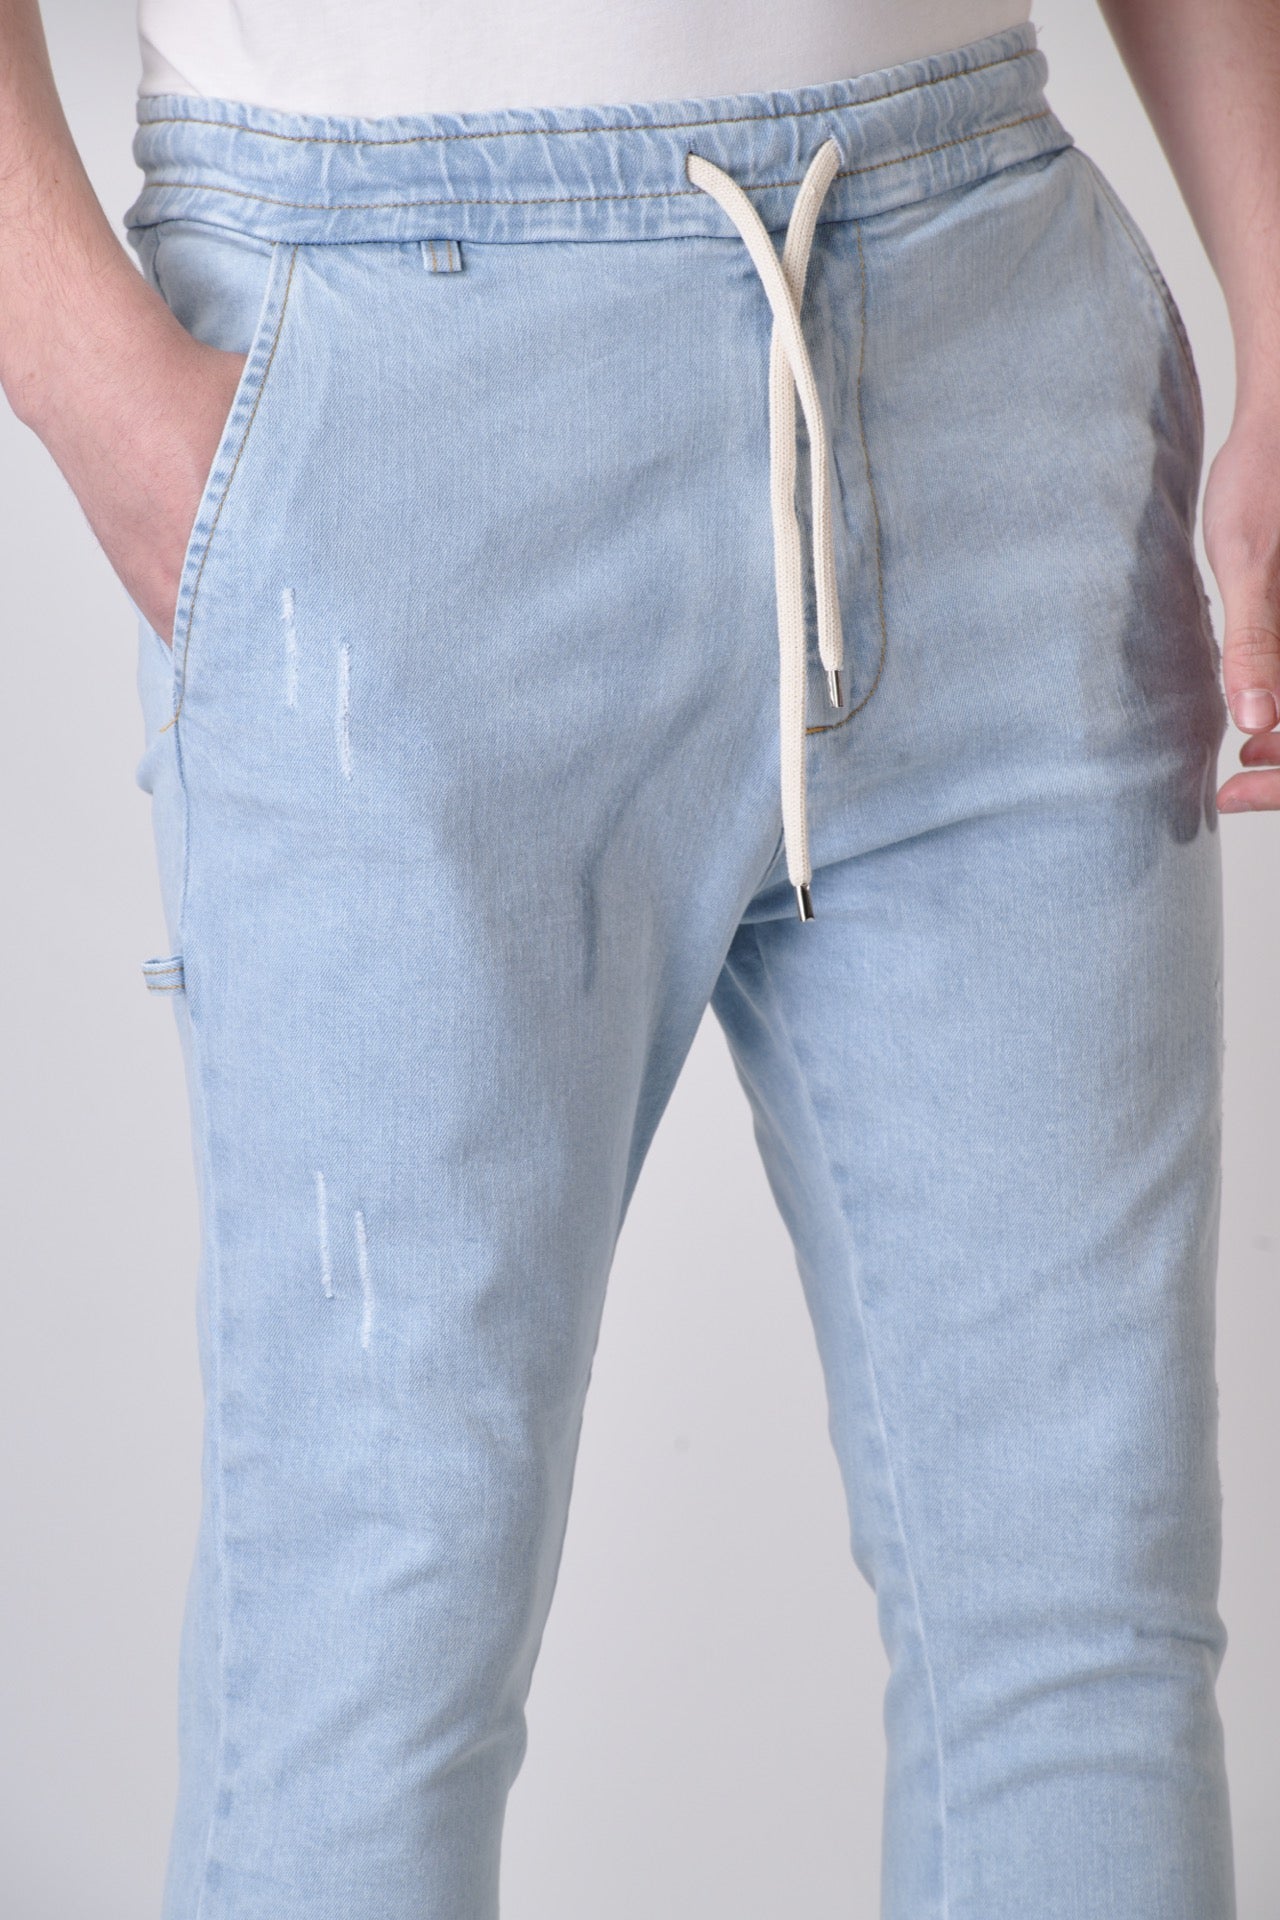 ALICANTE - Pantalone Drill Marmorizzato con elastico